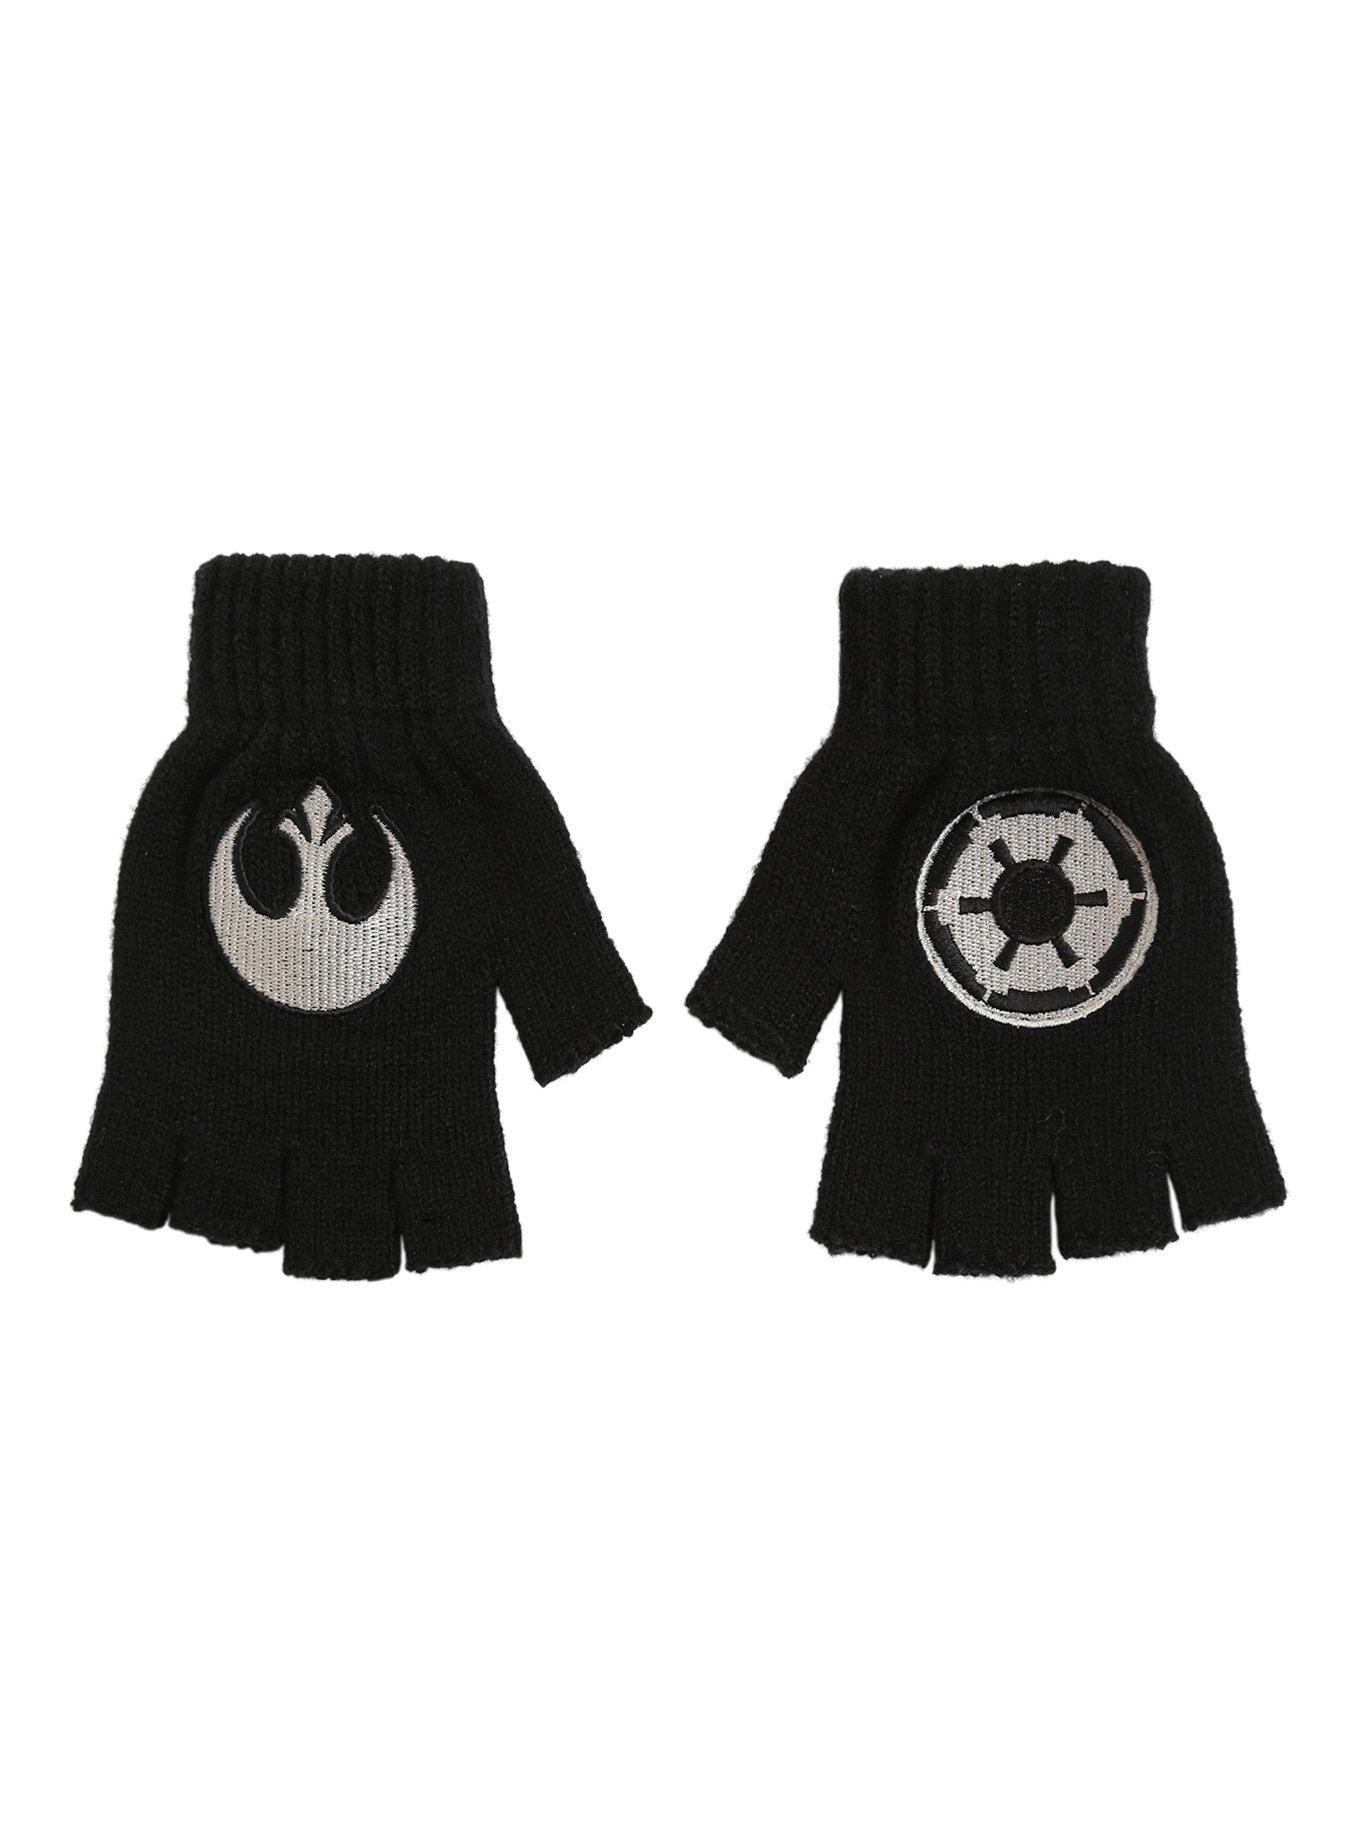 Star Wars Fingerless Gloves, , alternate